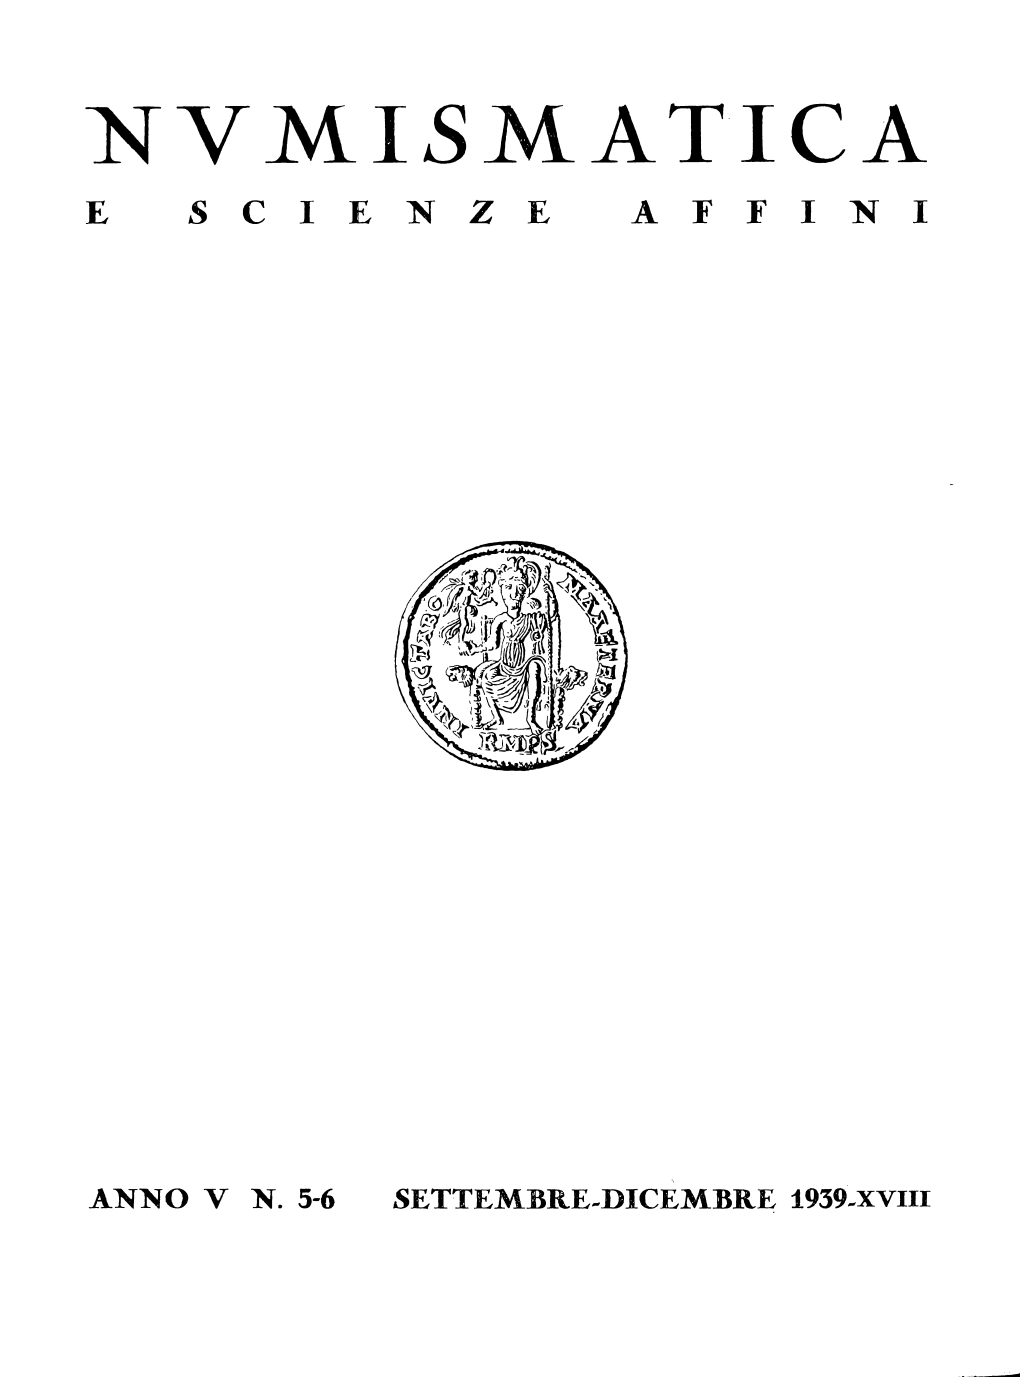 1939, Anno V, Fascicolo Numero 5-6, Settembre-Dicembre